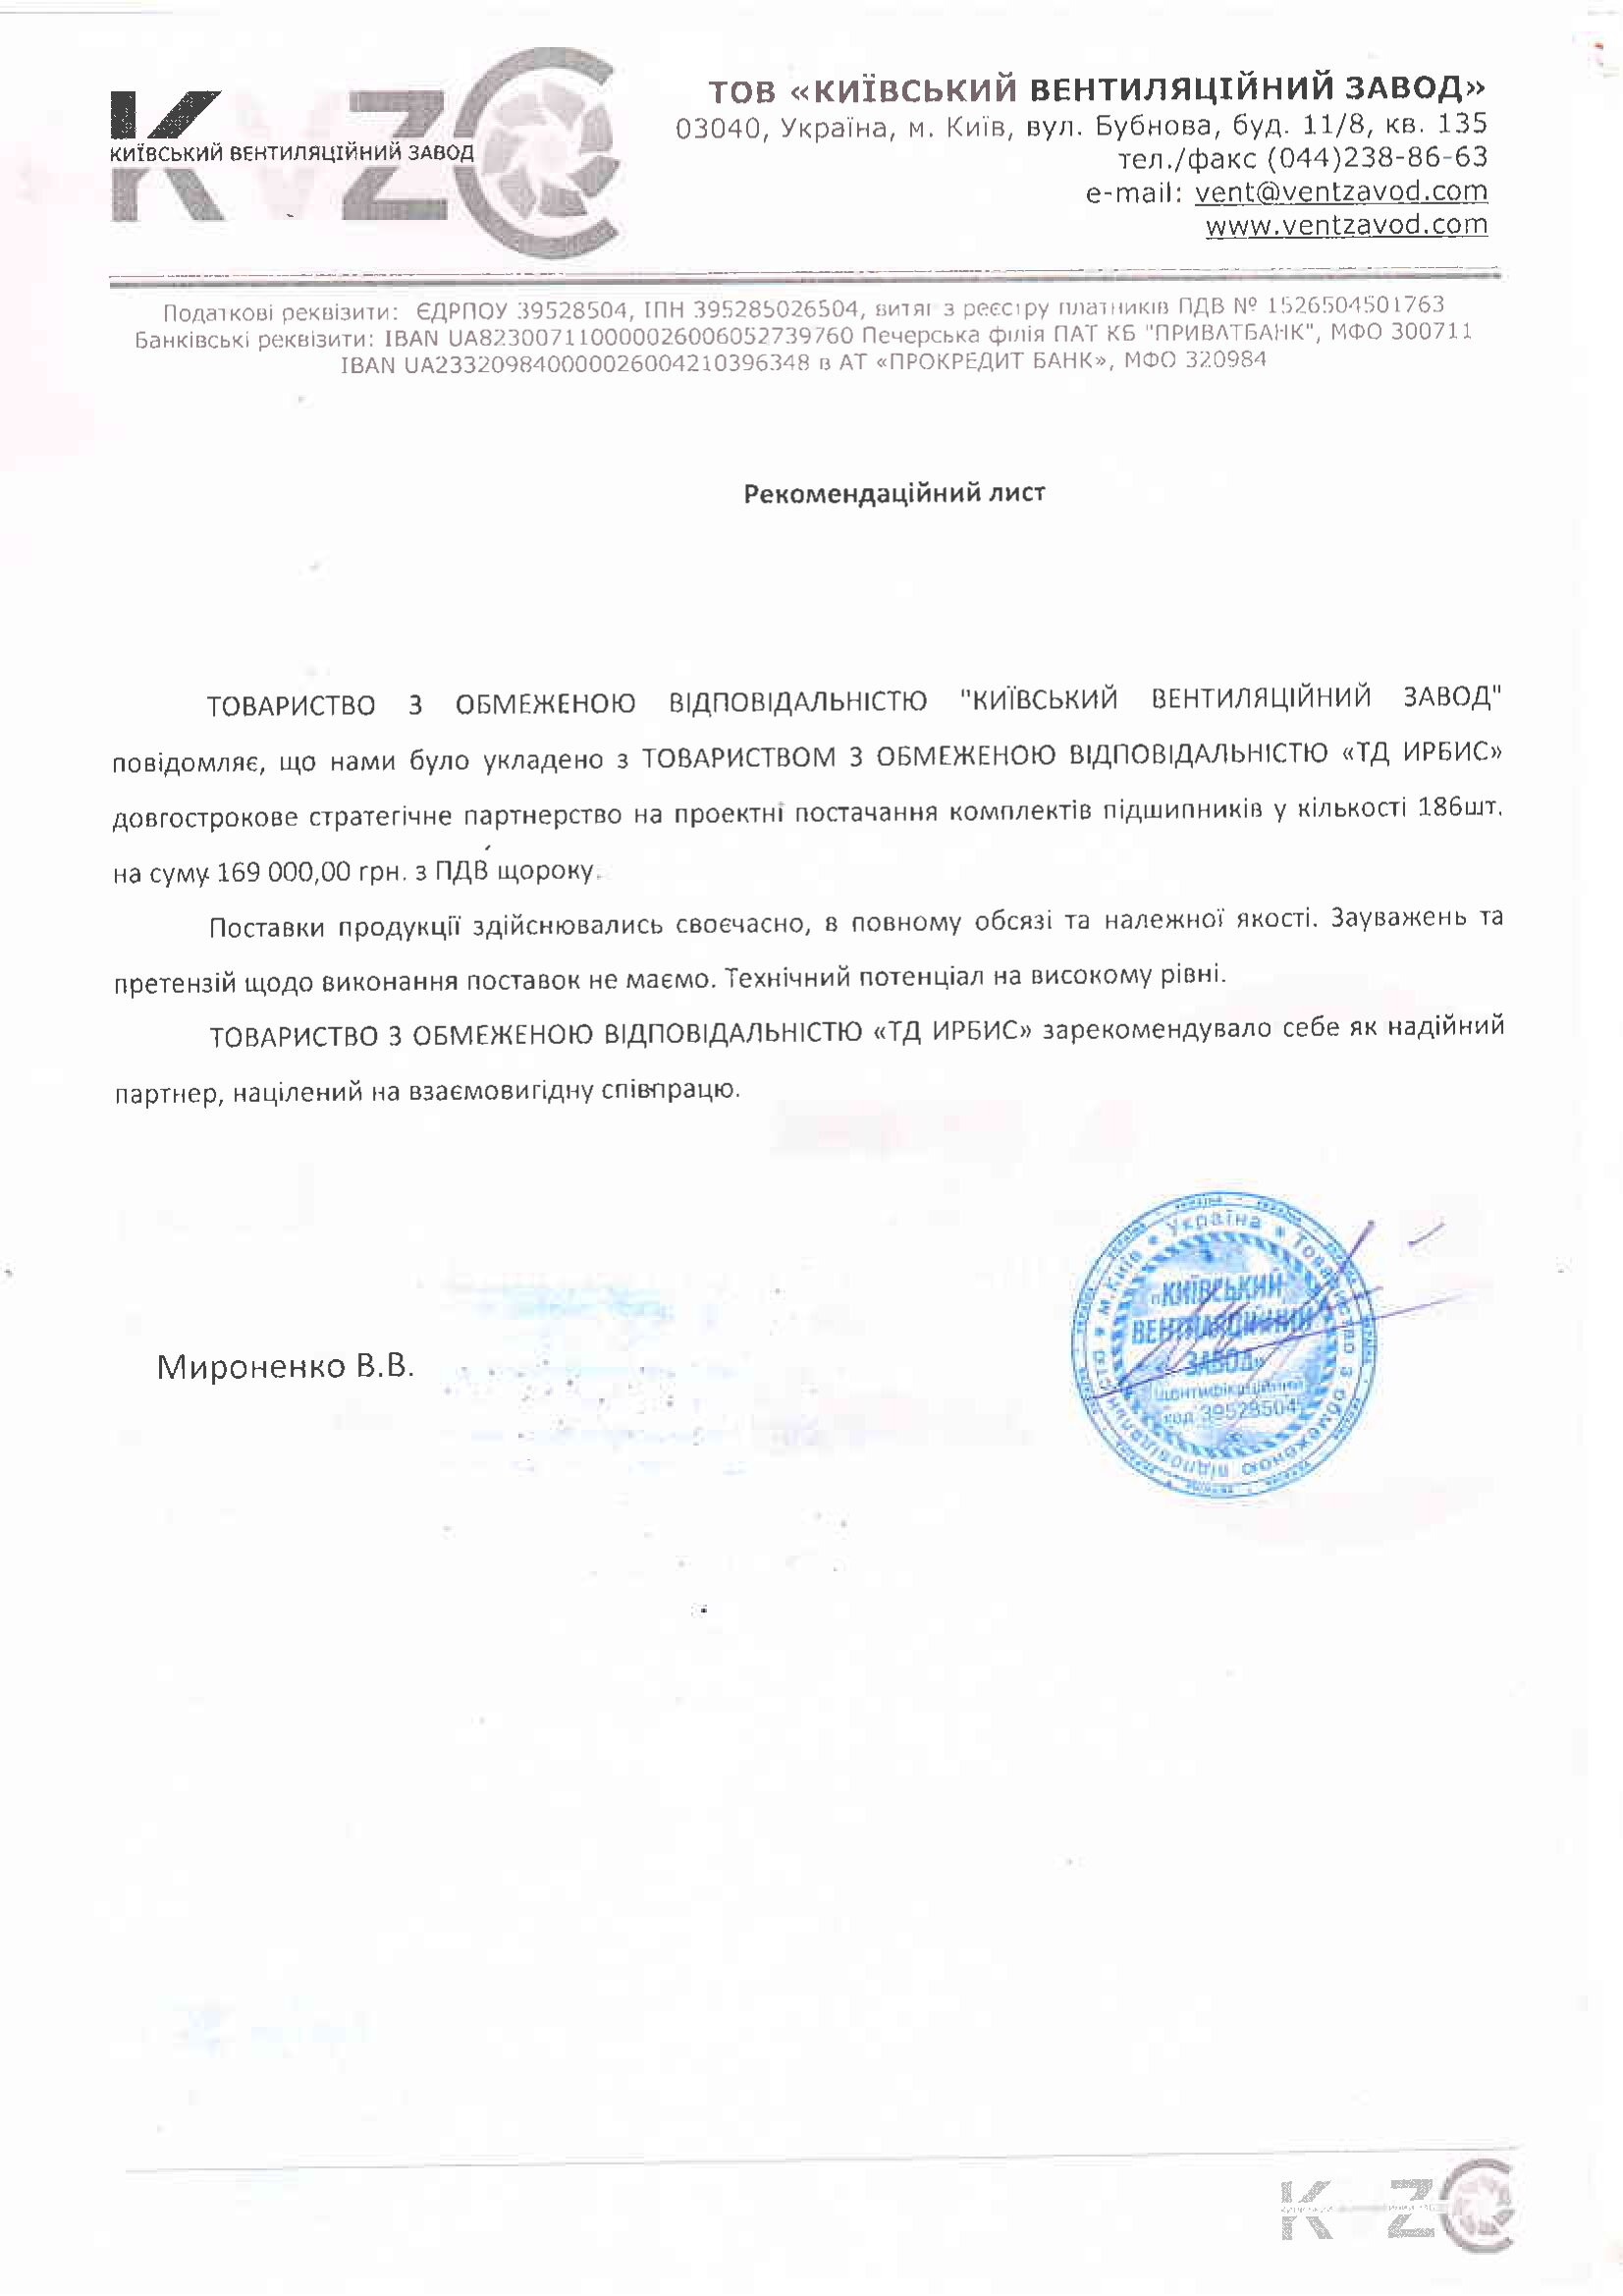 Рекомендательное письмо ООО Киевский вентиляционный завод